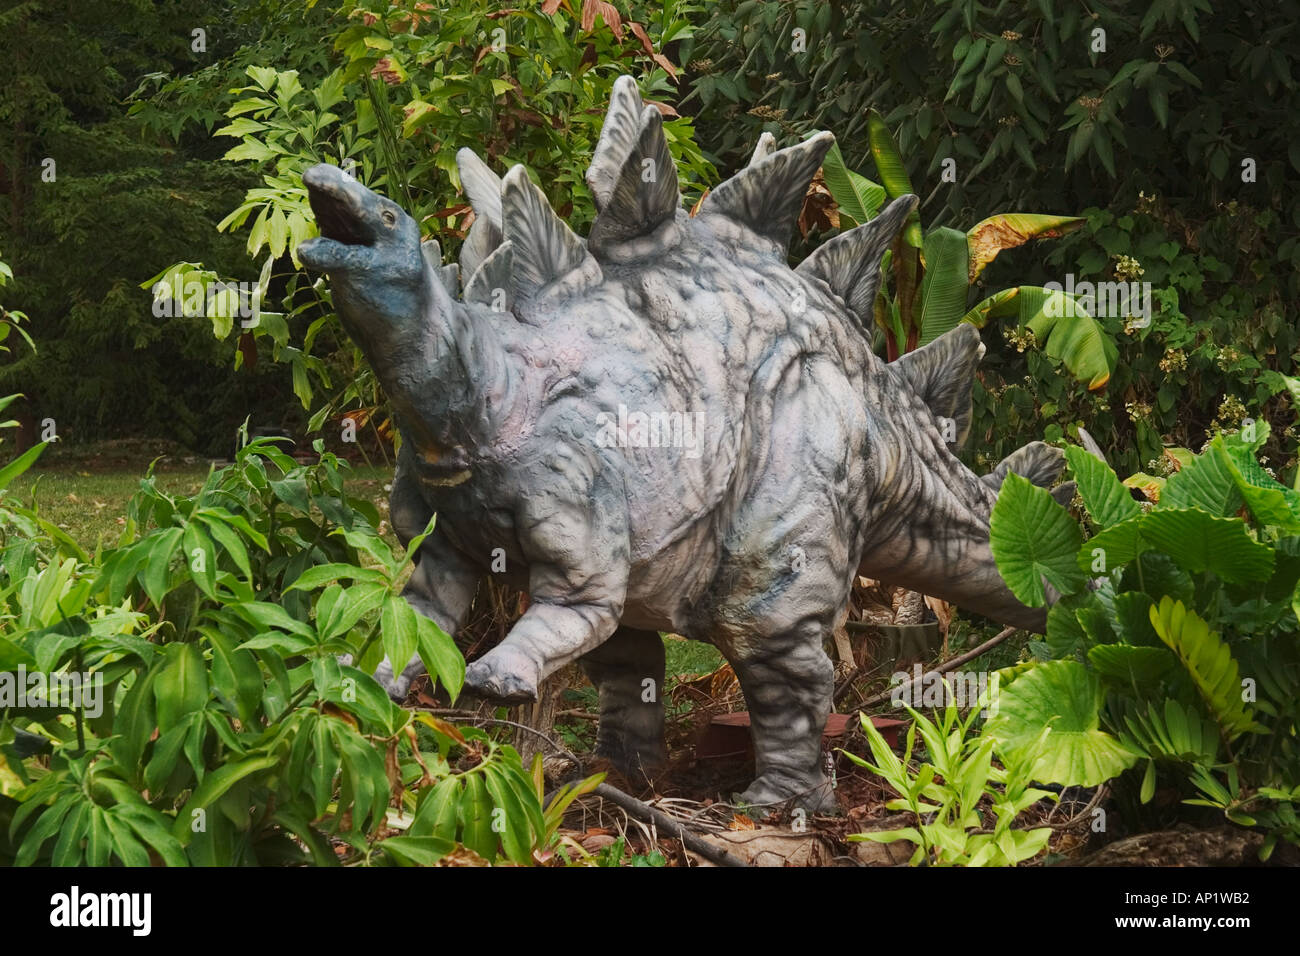 Stegosaurus dinosaurio del Jurásico va a una longitud de 29 pies y 2 a 3 toneladas ponderadas fue una planta eater Foto de stock